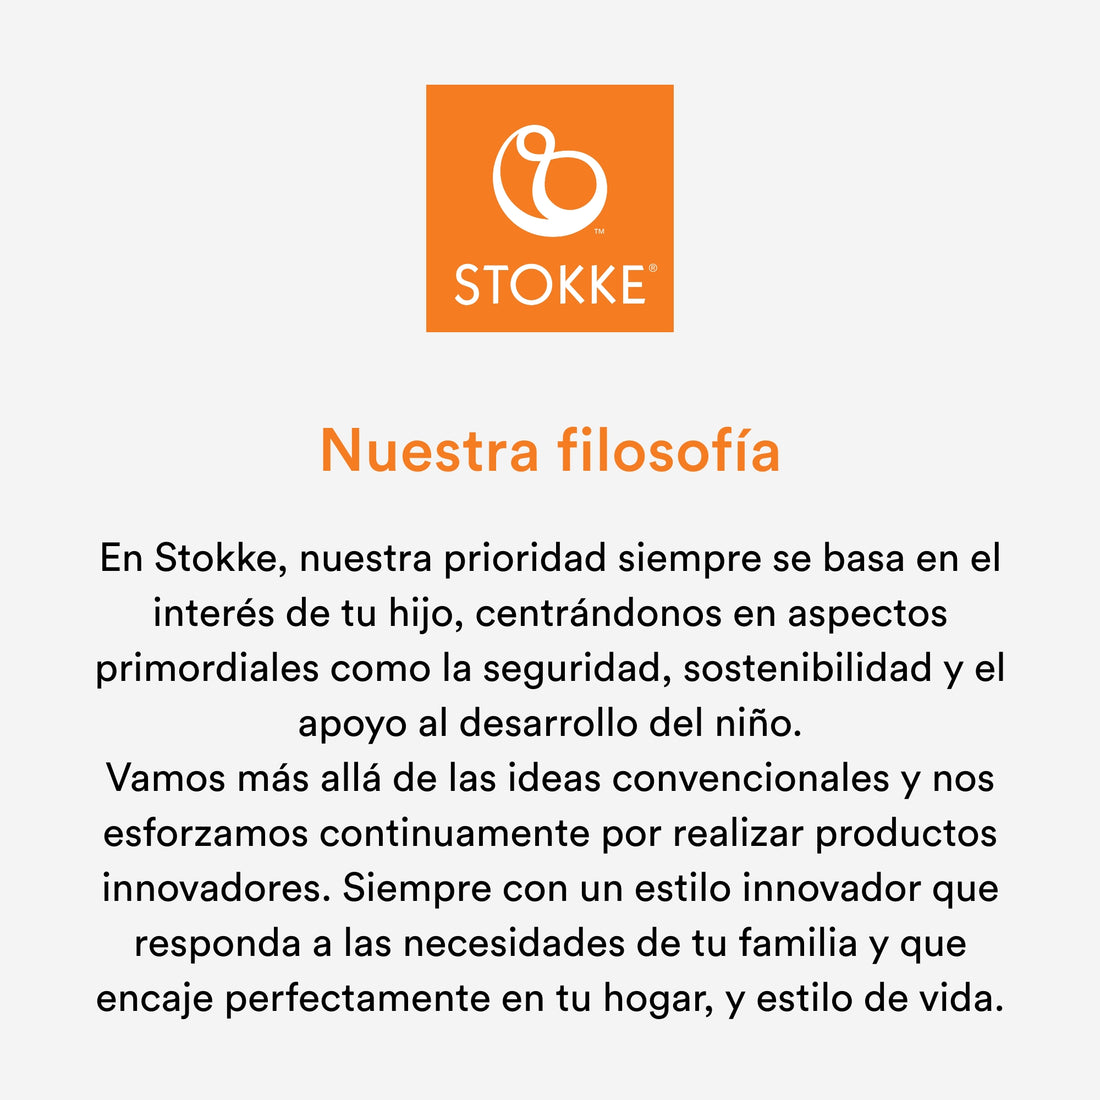 Stokke® MuTable™ Casa de Juegos V2